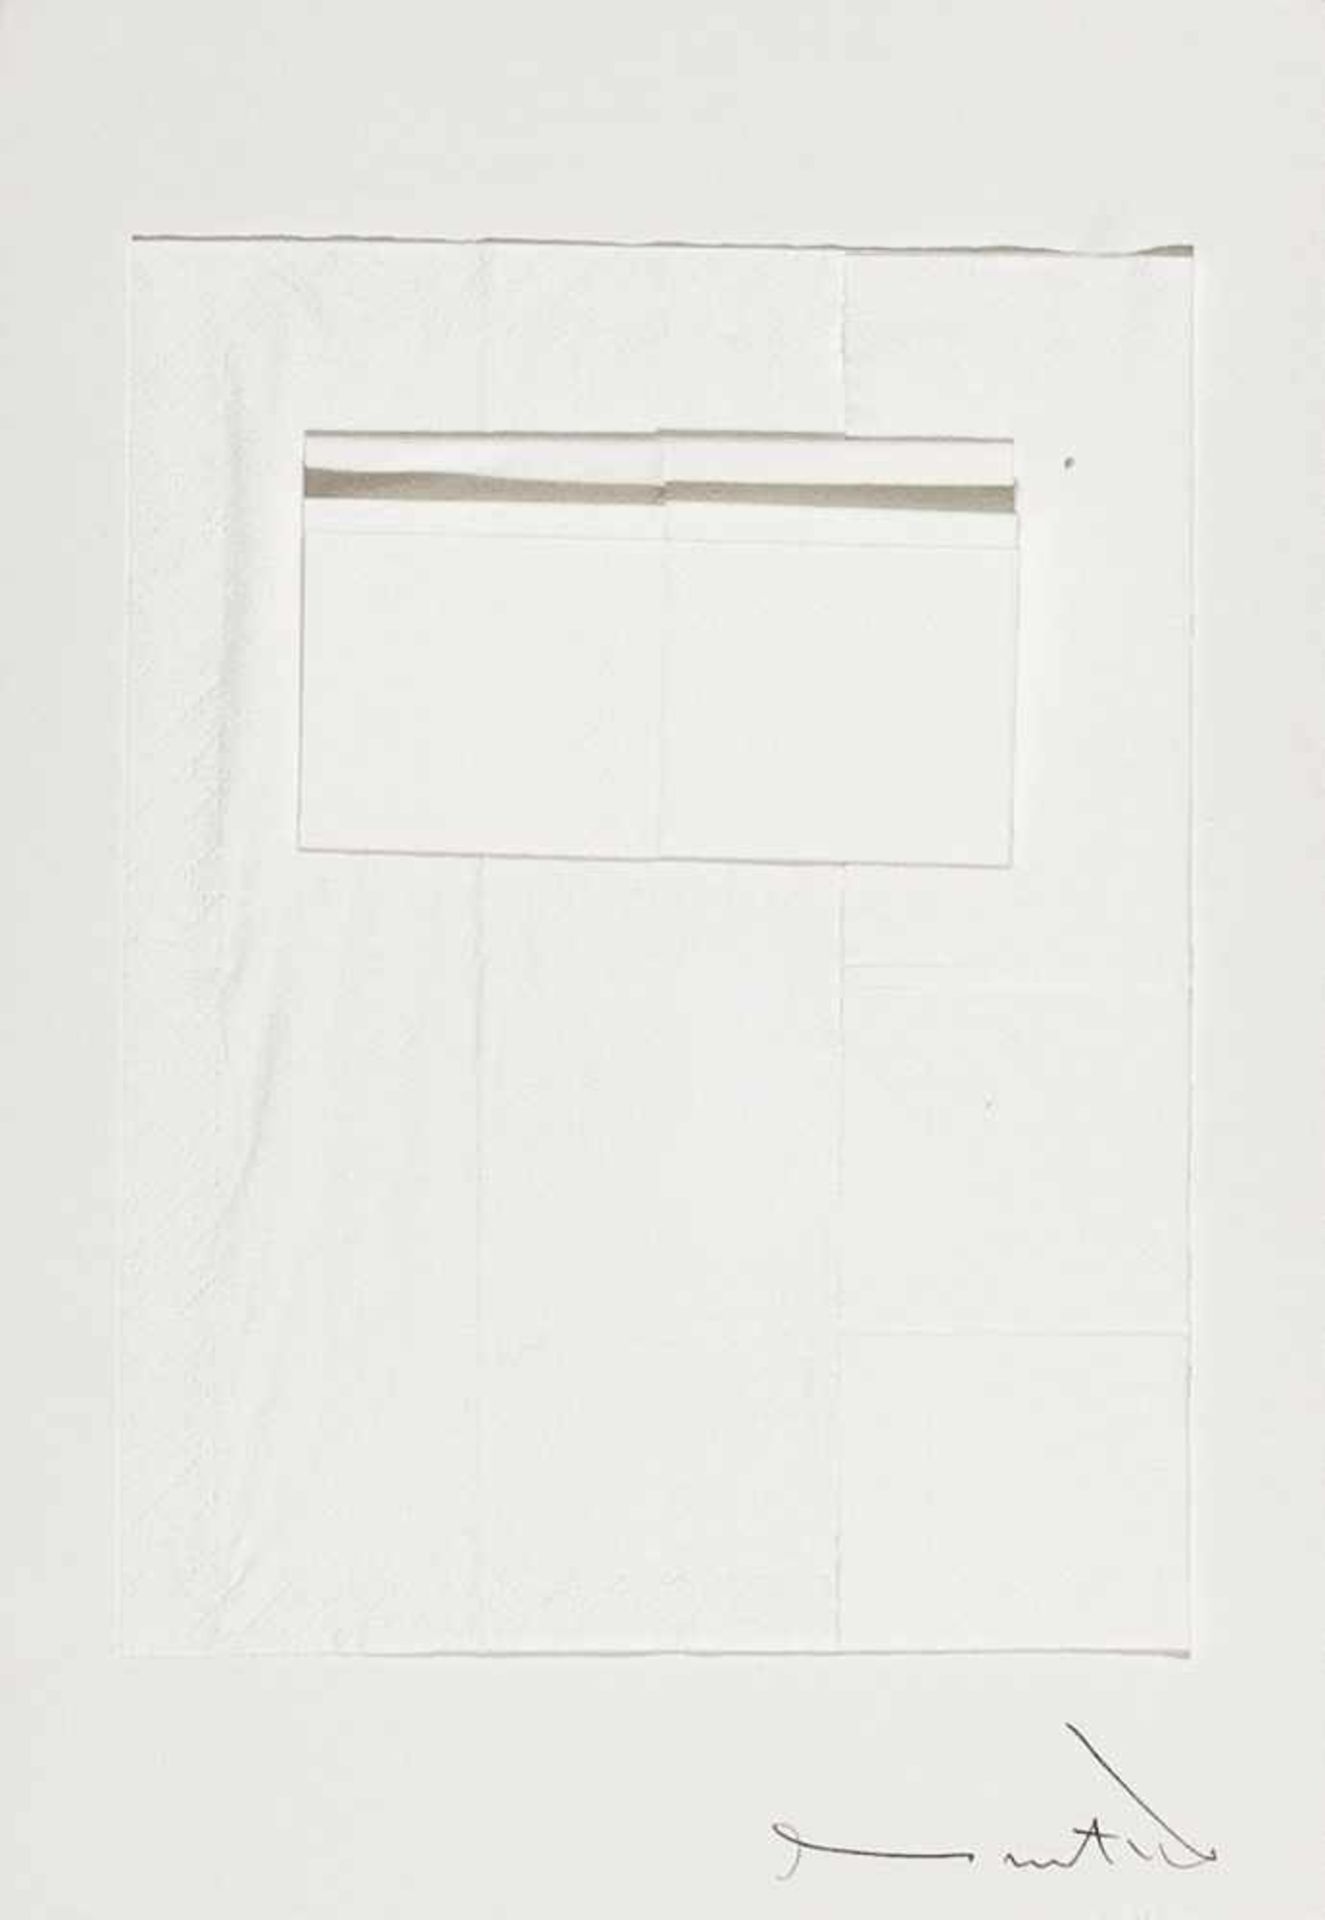 HERMANN NITSCH(1938 WIEN)o. T., 1972Papiertaschentücher auf weißem Karton, 21 x 30